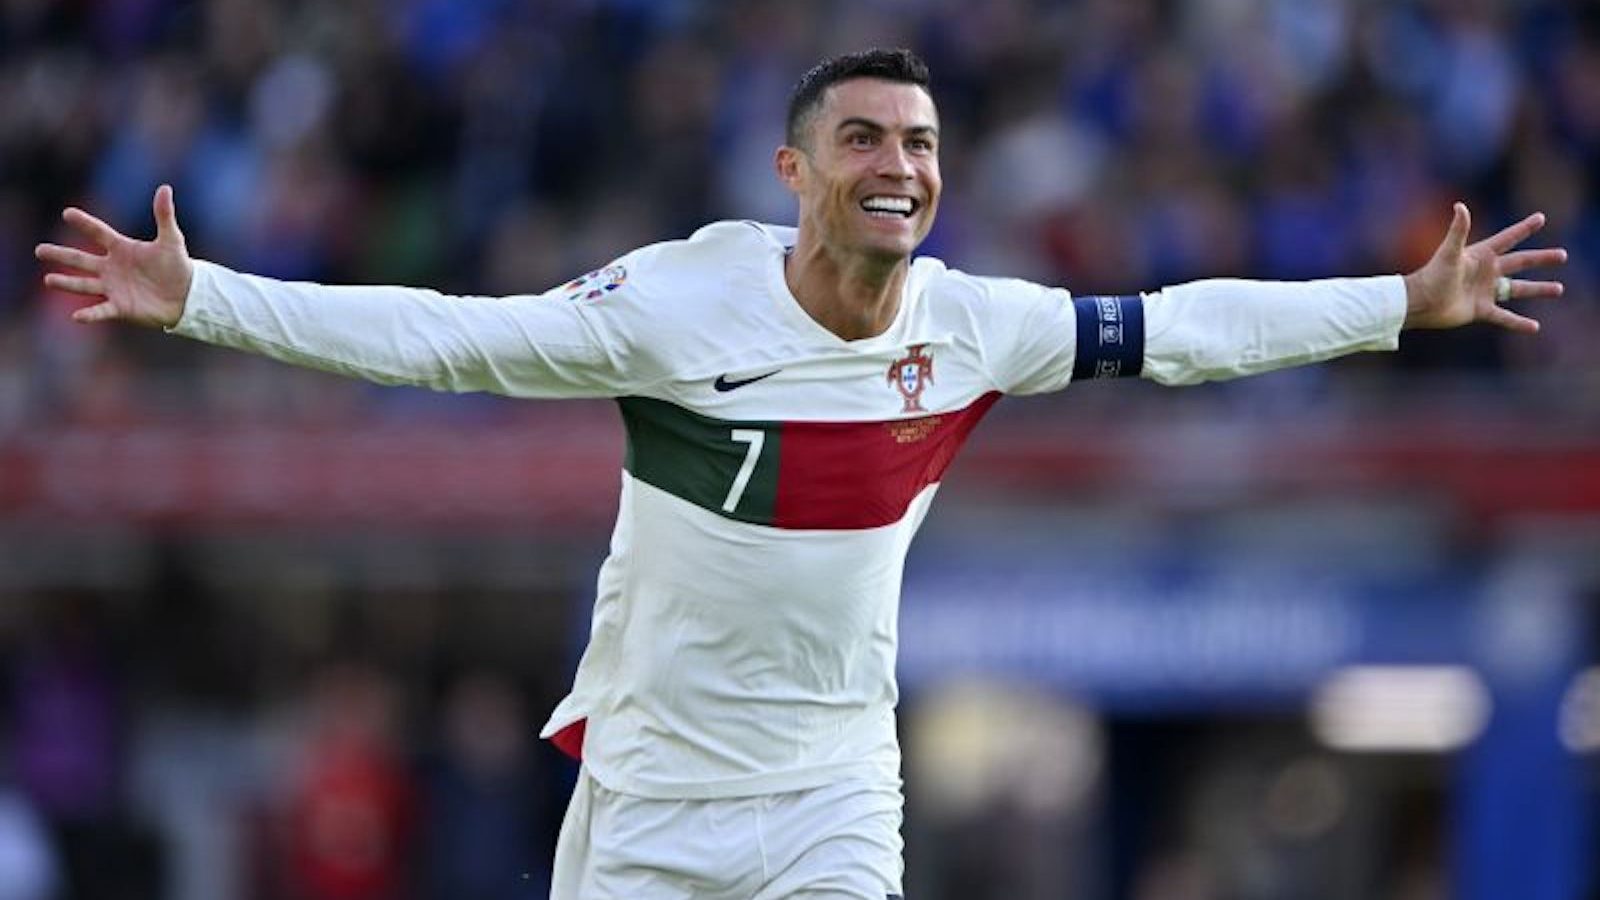 Cristiano Ronaldo marcou o gol da vitória no último minuto em sua 200ª partida por Portugal, estabelecendo um novo recorde